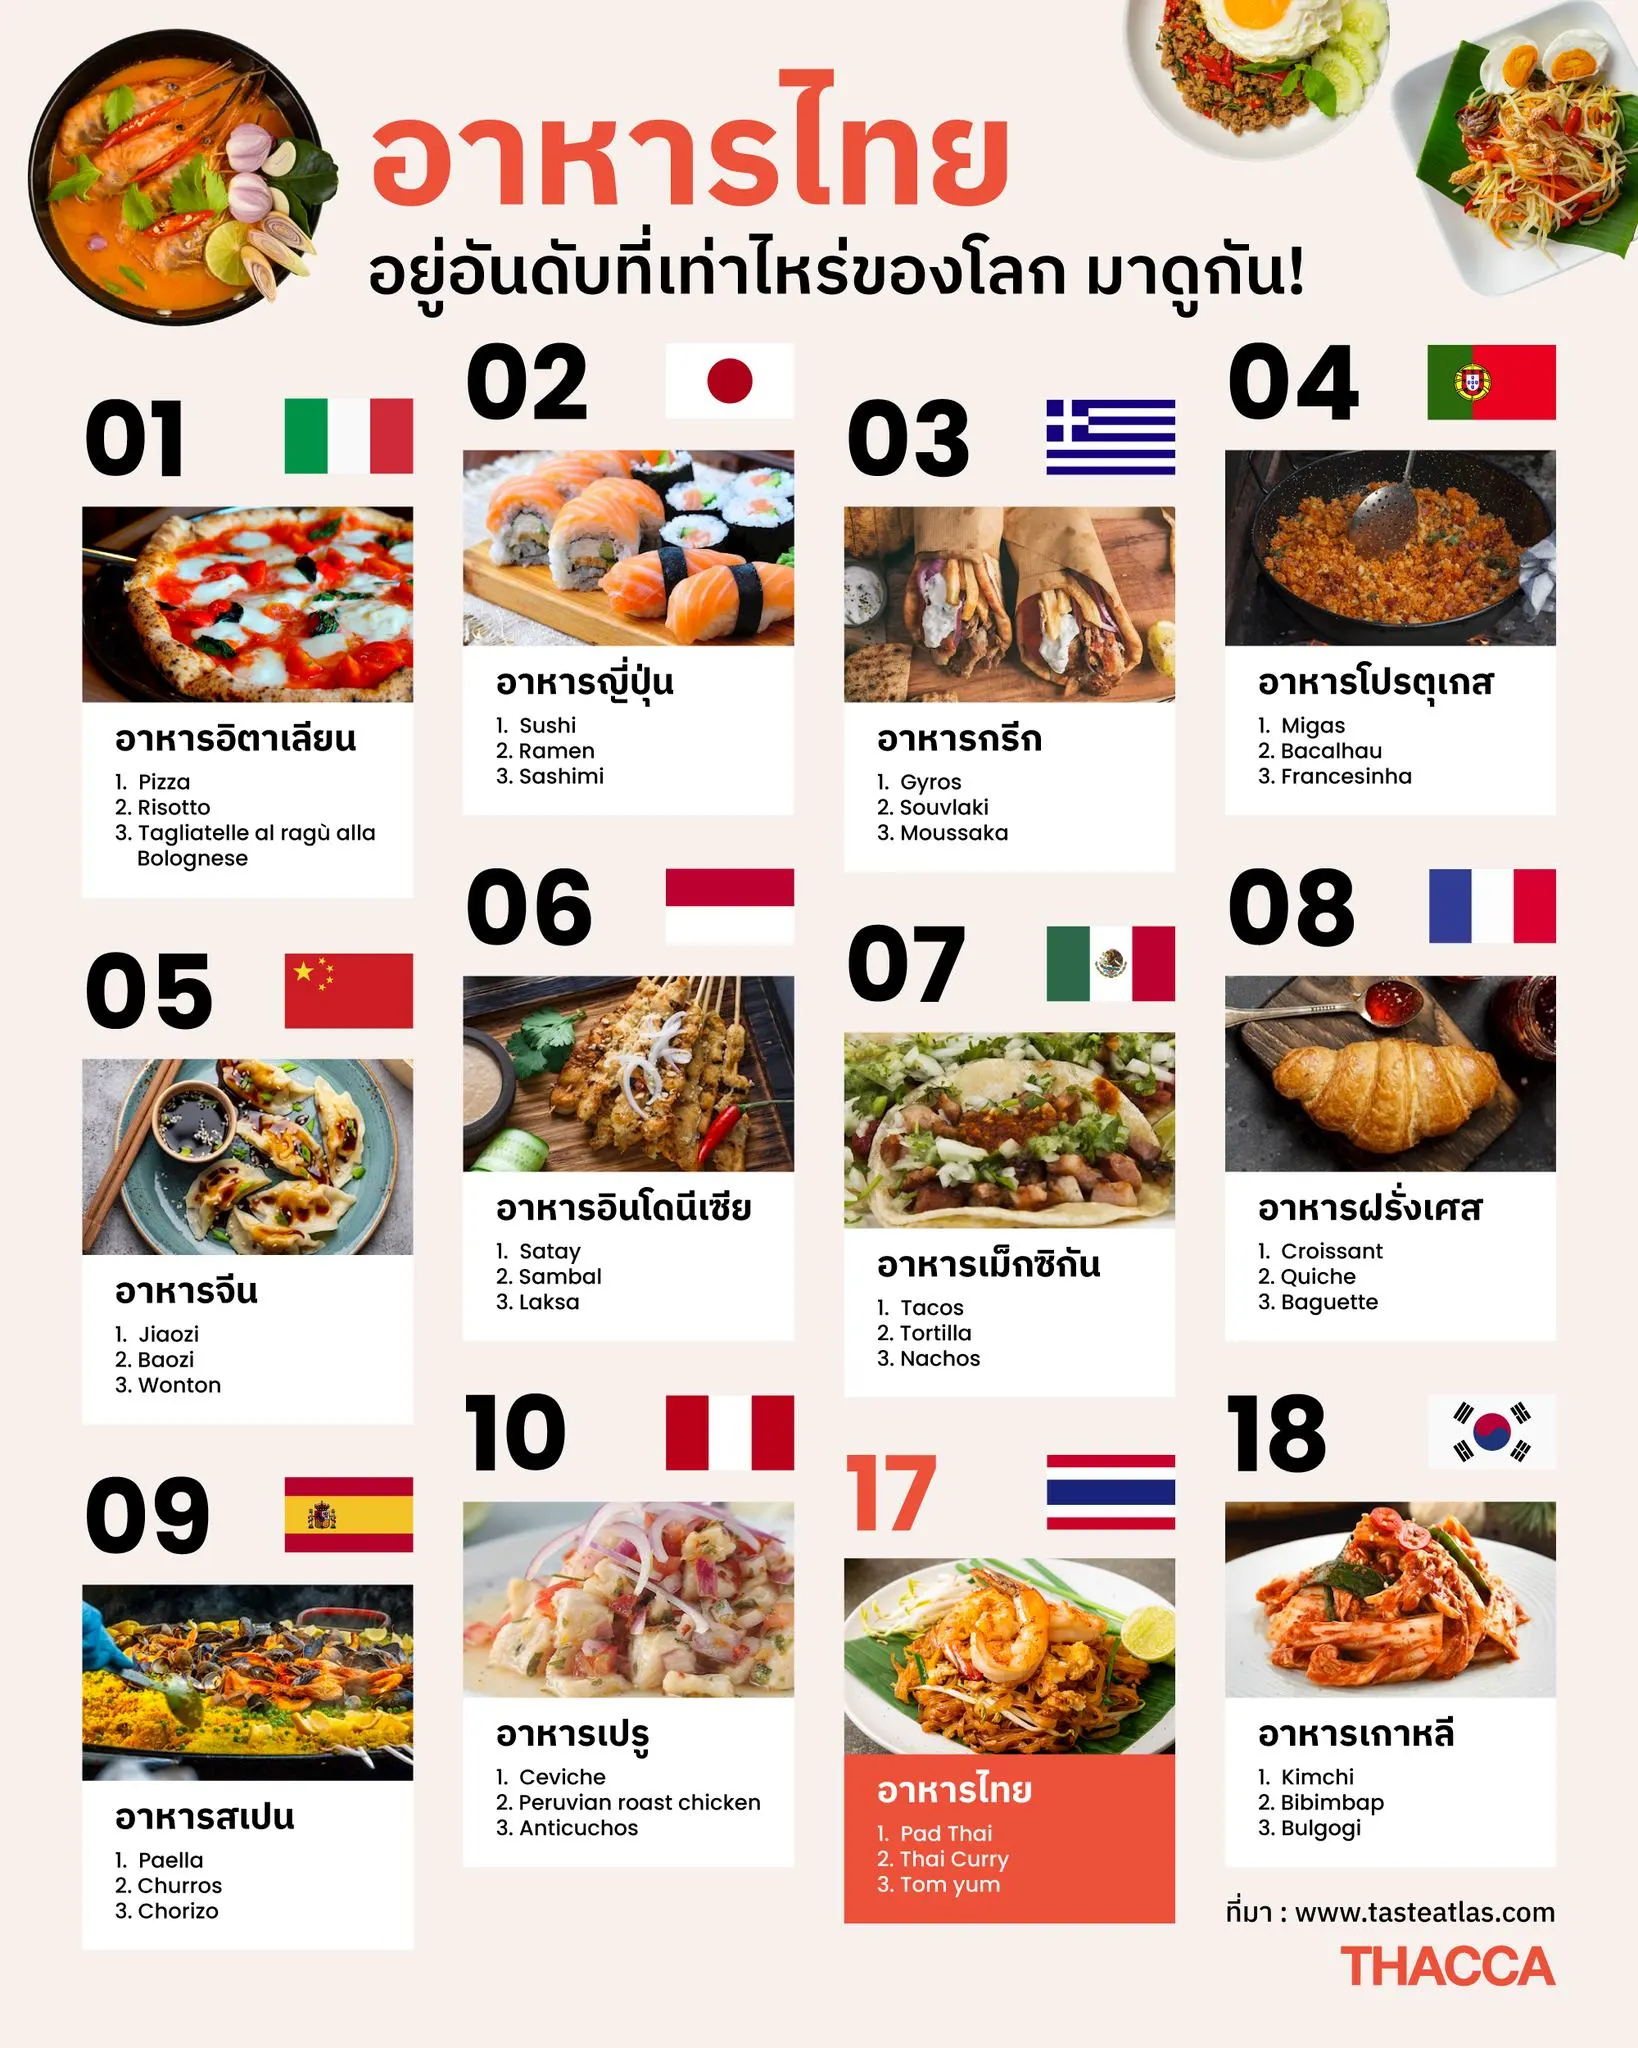 อาหารไทยอยู่อันดับที่เท่าไหร่ของโลก มาดูกัน!